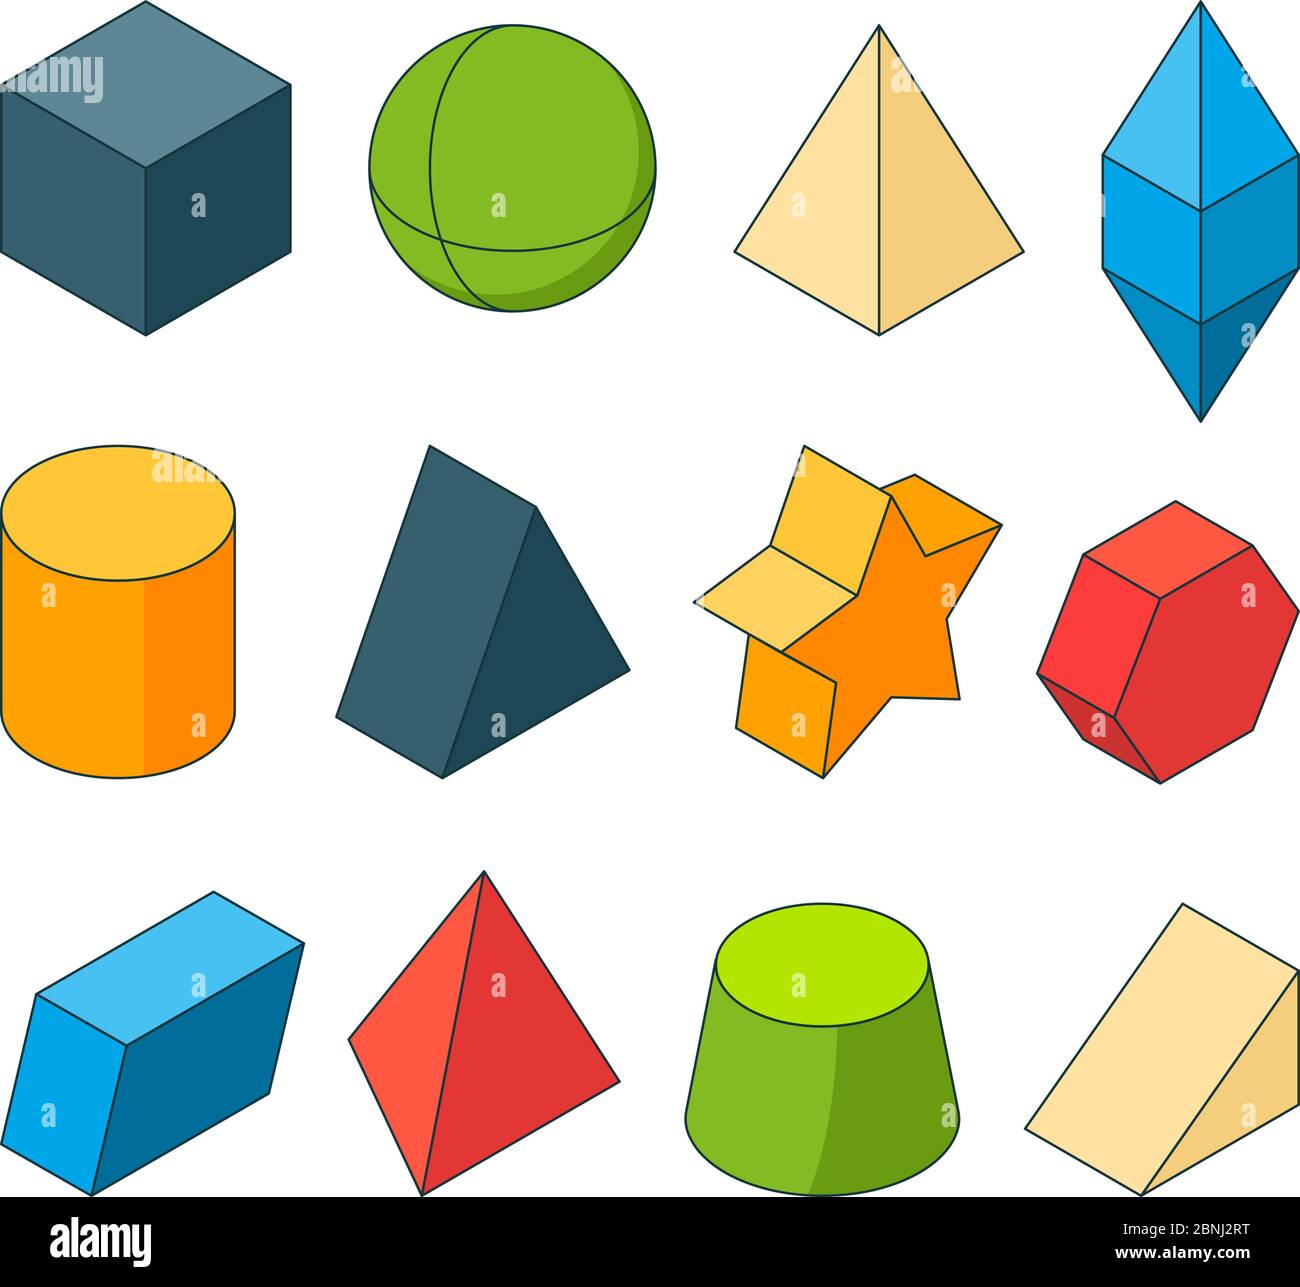 3d-Modell von Geometrieformen. Farbige Bilder Sätze. Pyramiden, Sterne, Würfel und andere Stock Vektor